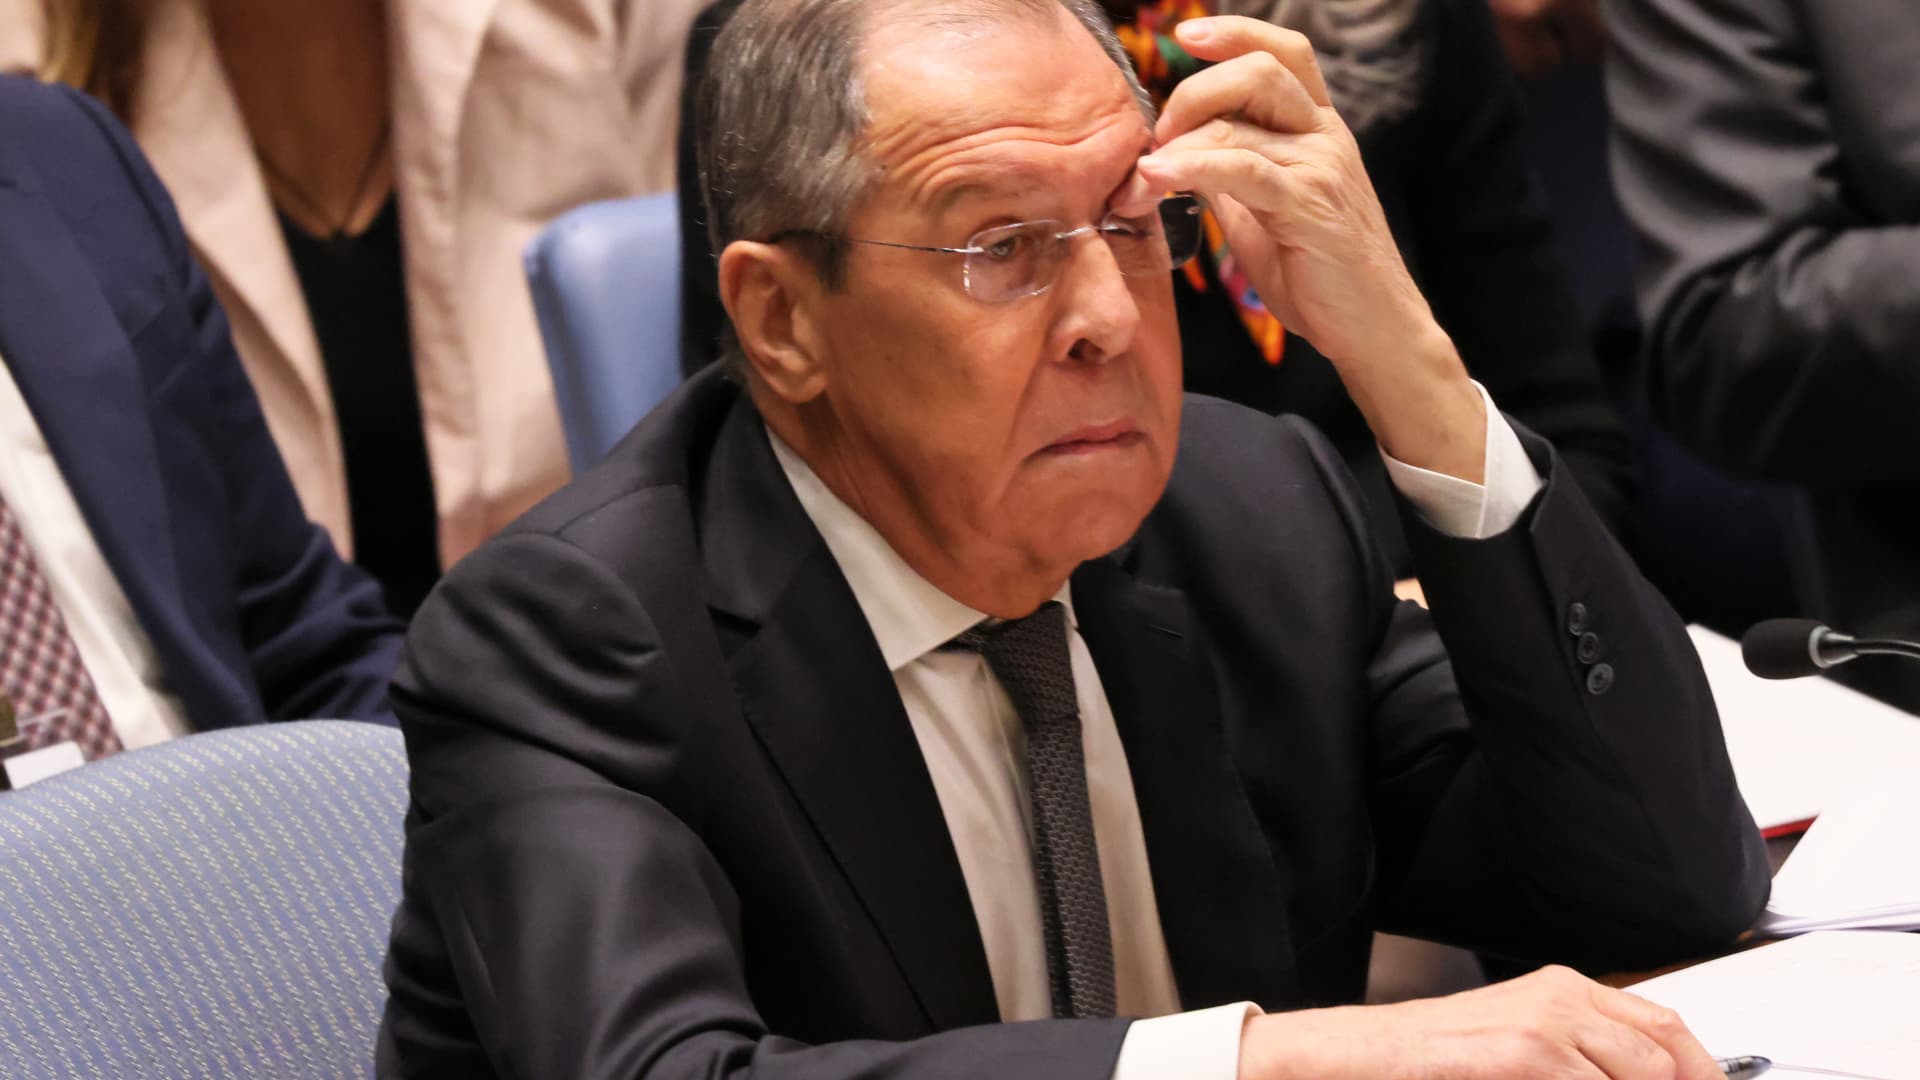 Lavrov criticized for Russia’s war in Ukraine at UN